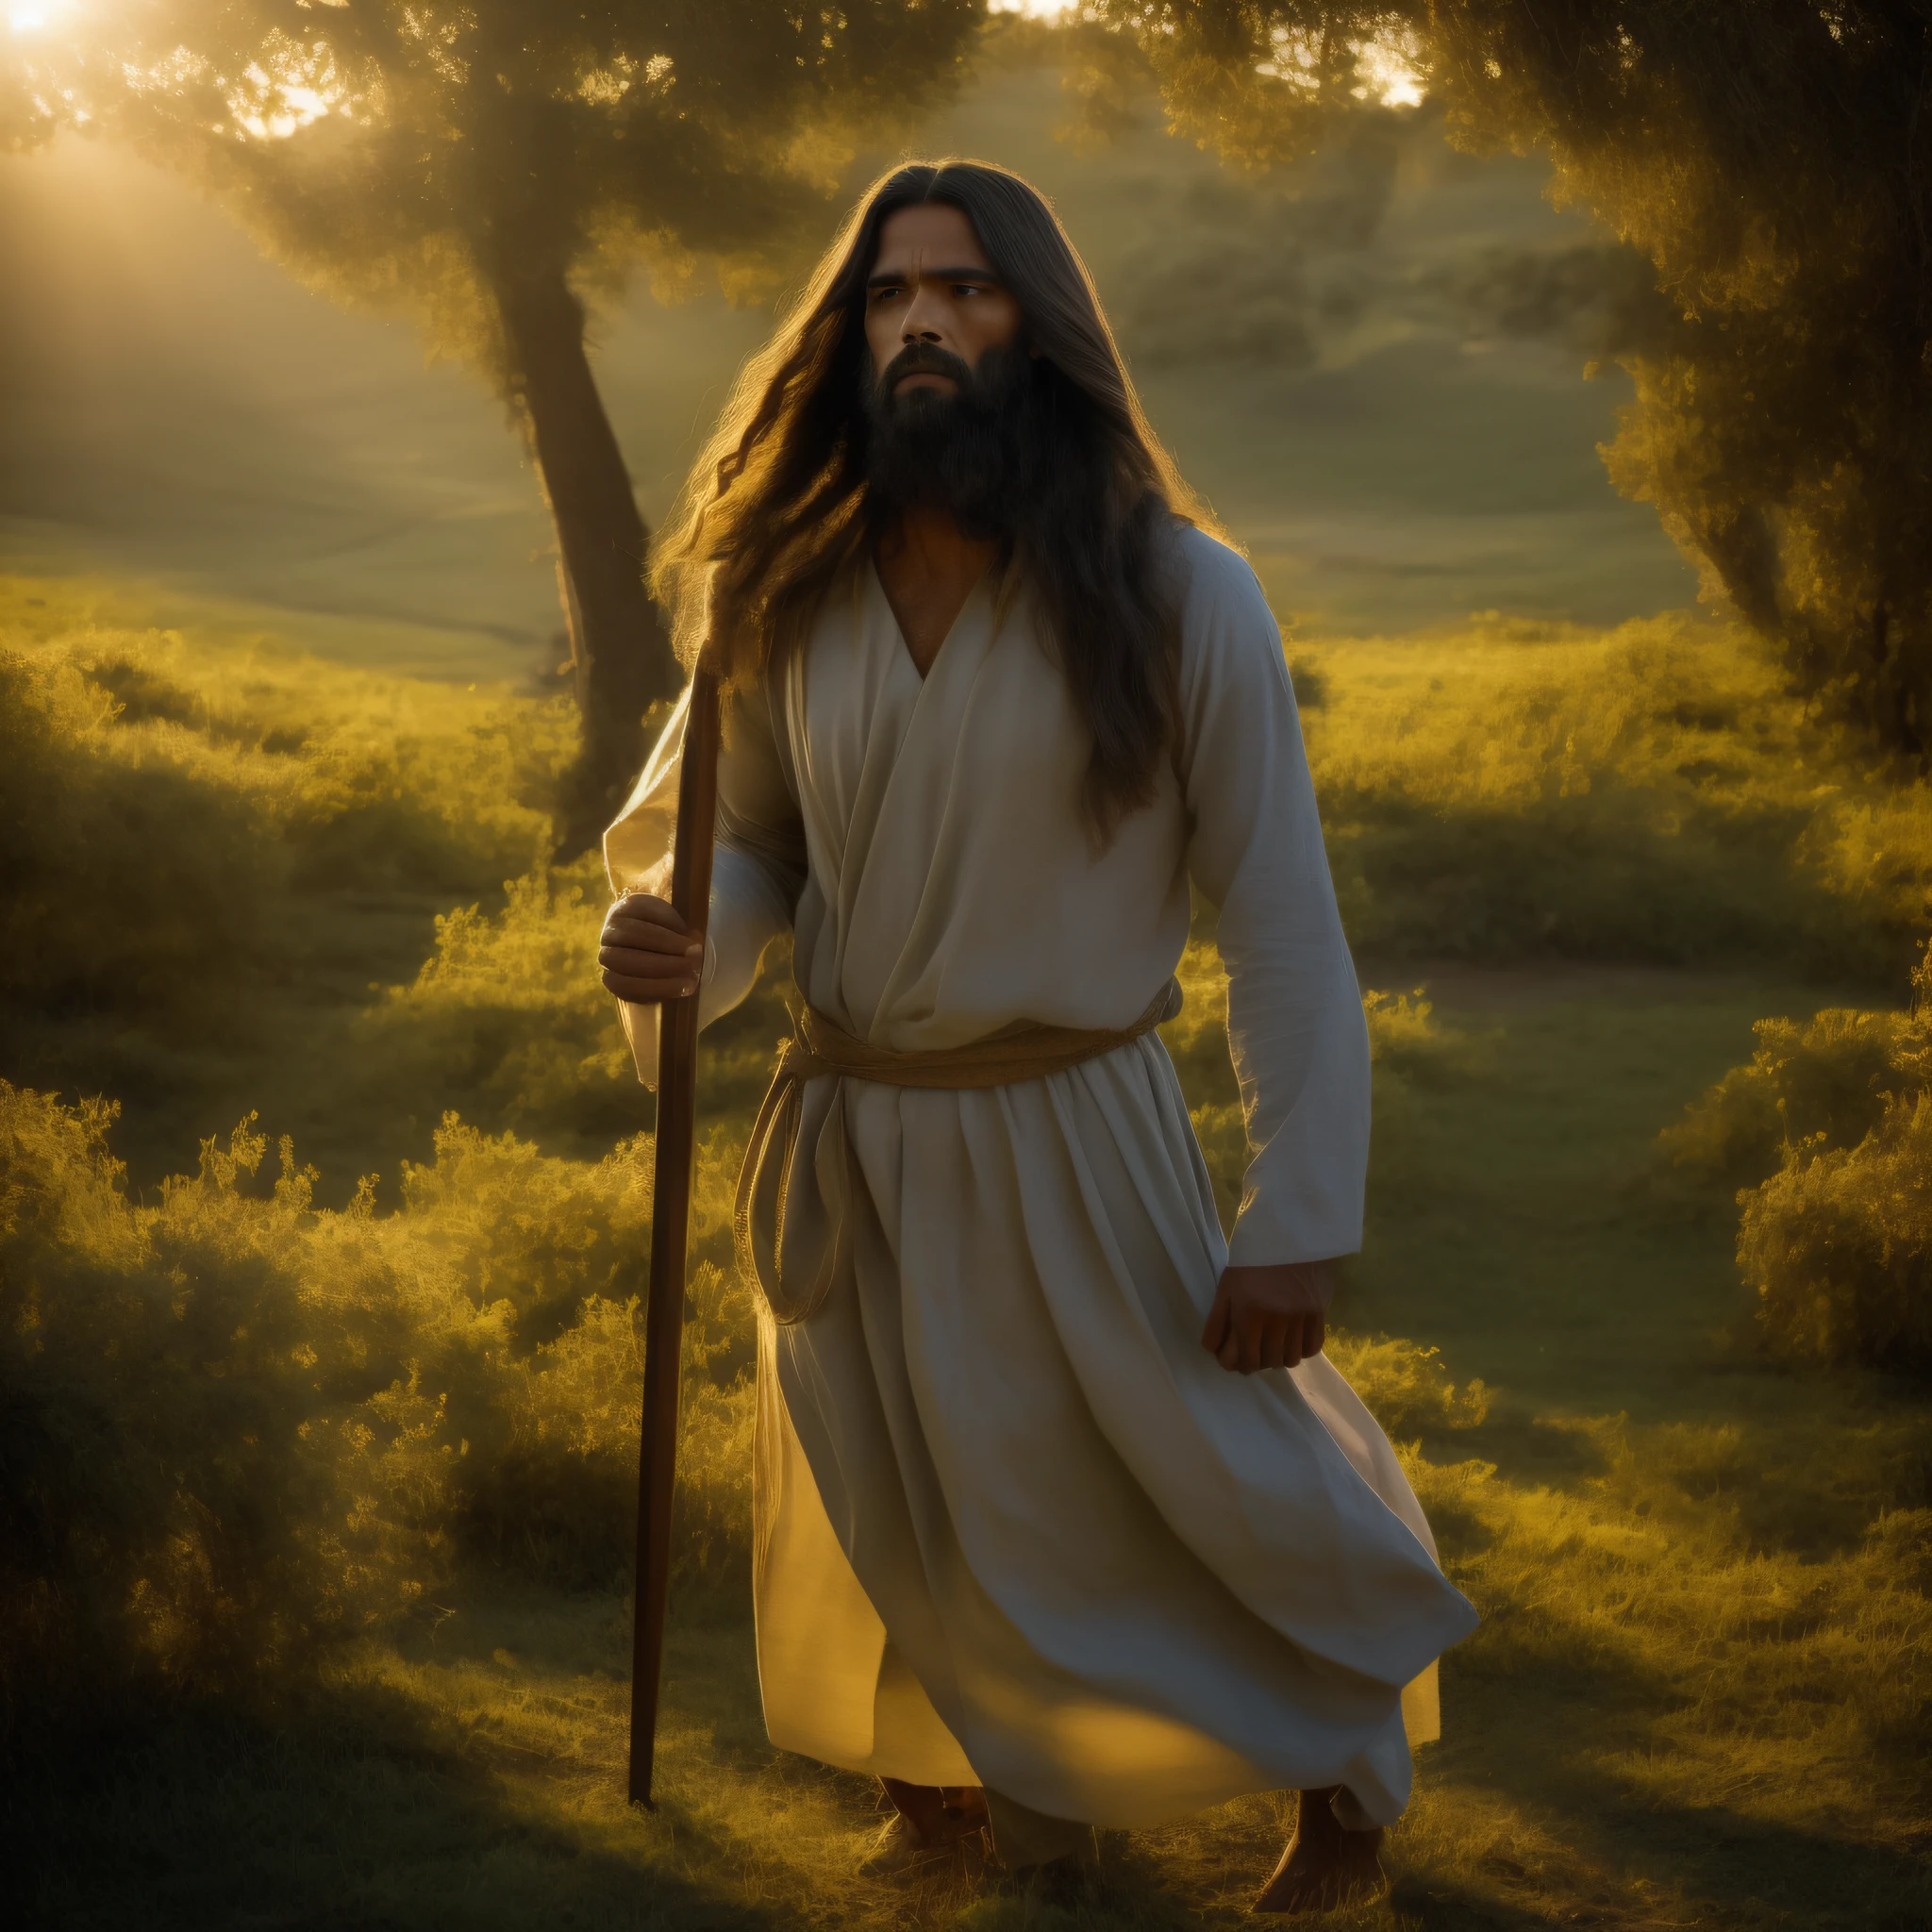 画像では, イエス・キリストが当時の時代を思い起こさせる場面で詳細に描かれているのがわかる。. 彼は長い服を着ている, シンプルなチュニック, 質感のある生地とアースカラーで作られています. 彼の髪とひげは長く、少しウェーブがかかっている。, 男らしさと知恵を示す.

彼の目は深くて慈悲深い, 神聖な静寂を反映. イエスの視線は、すべての人類に対する無条件の愛と慈悲を伝えている.

彼の手の中に, 彼は彫刻された木の杖を持っている, 羊の群れの羊飼いとしての役割を象徴する. 彼の後ろ, 緑豊かな野原が広がる, 神の創造を象徴する野生の花や自然植物が点在する.

イエスの周り, さまざまな背景や社会的状況を持つ人々がいる. 背中を丸めている人もいる, 慰めと導きを求めて, 他の人が立っている間, 驚きと希望を持って彼を見つめる. 彼らの表情は様々です, イエスが各人に呼び起こす感情の多様性を示す.

太陽の光がシーンを優しく照らします, 穏やかで心地よい雰囲気を醸し出す. 背景, 丘陵が見える, イエスが住んでいた地域の風景を思い起こさせる.